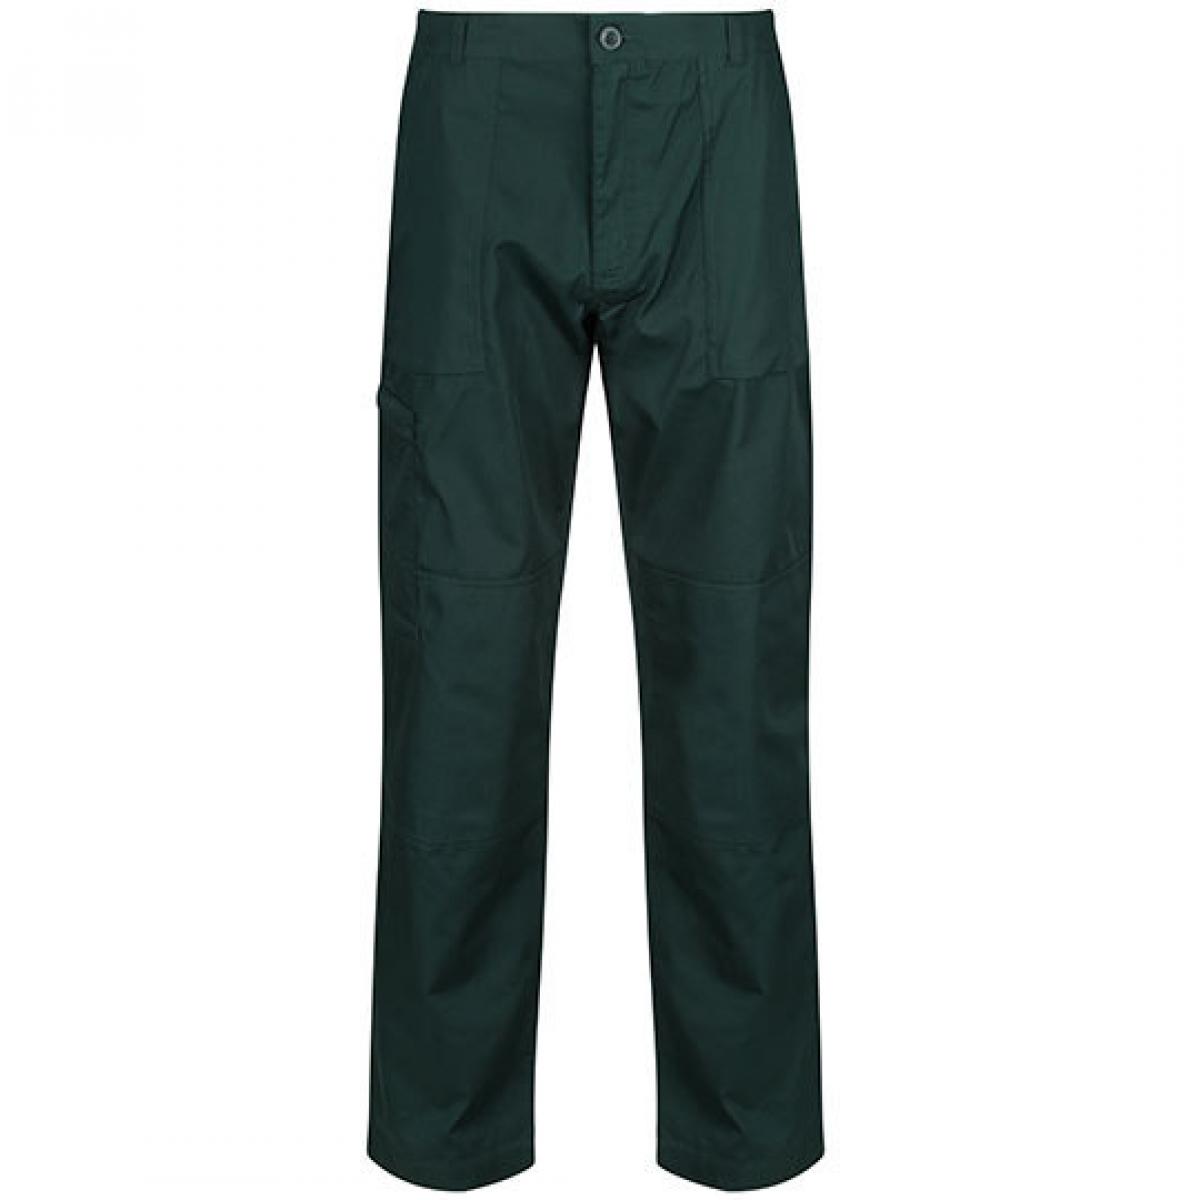 Hersteller: Regatta Herstellernummer: TRJ330 Artikelbezeichnung: Herren Action Trouser Arbeitshose / wasserabweisend Farbe: Green